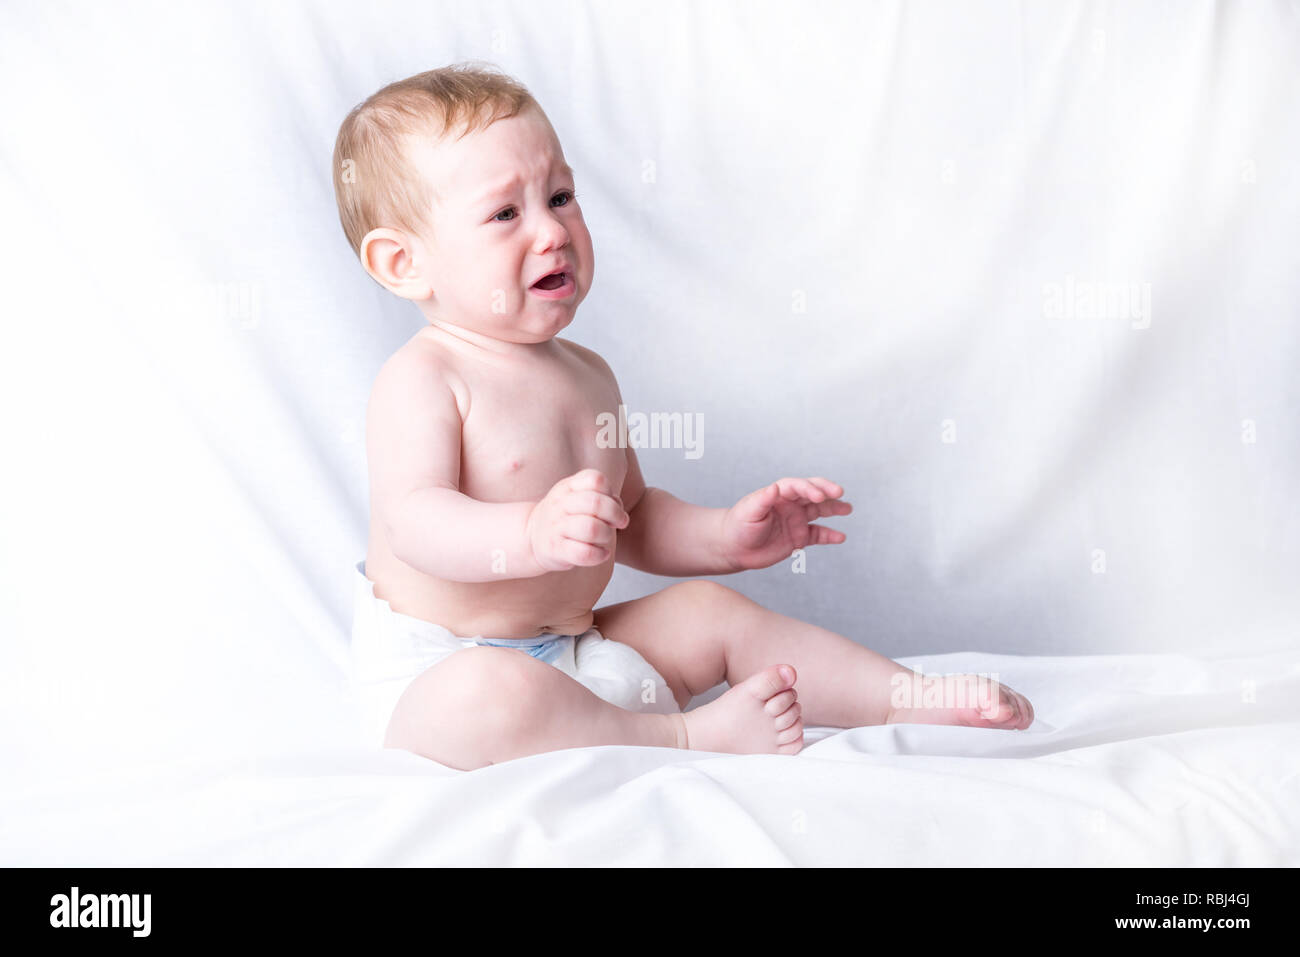 Blue Eyed Mignon Bebe 6 9 Mois Triste Pleurer Fond Blanc Les Emotions De L Enfant La Douleur De La Dentition Photo Stock Alamy